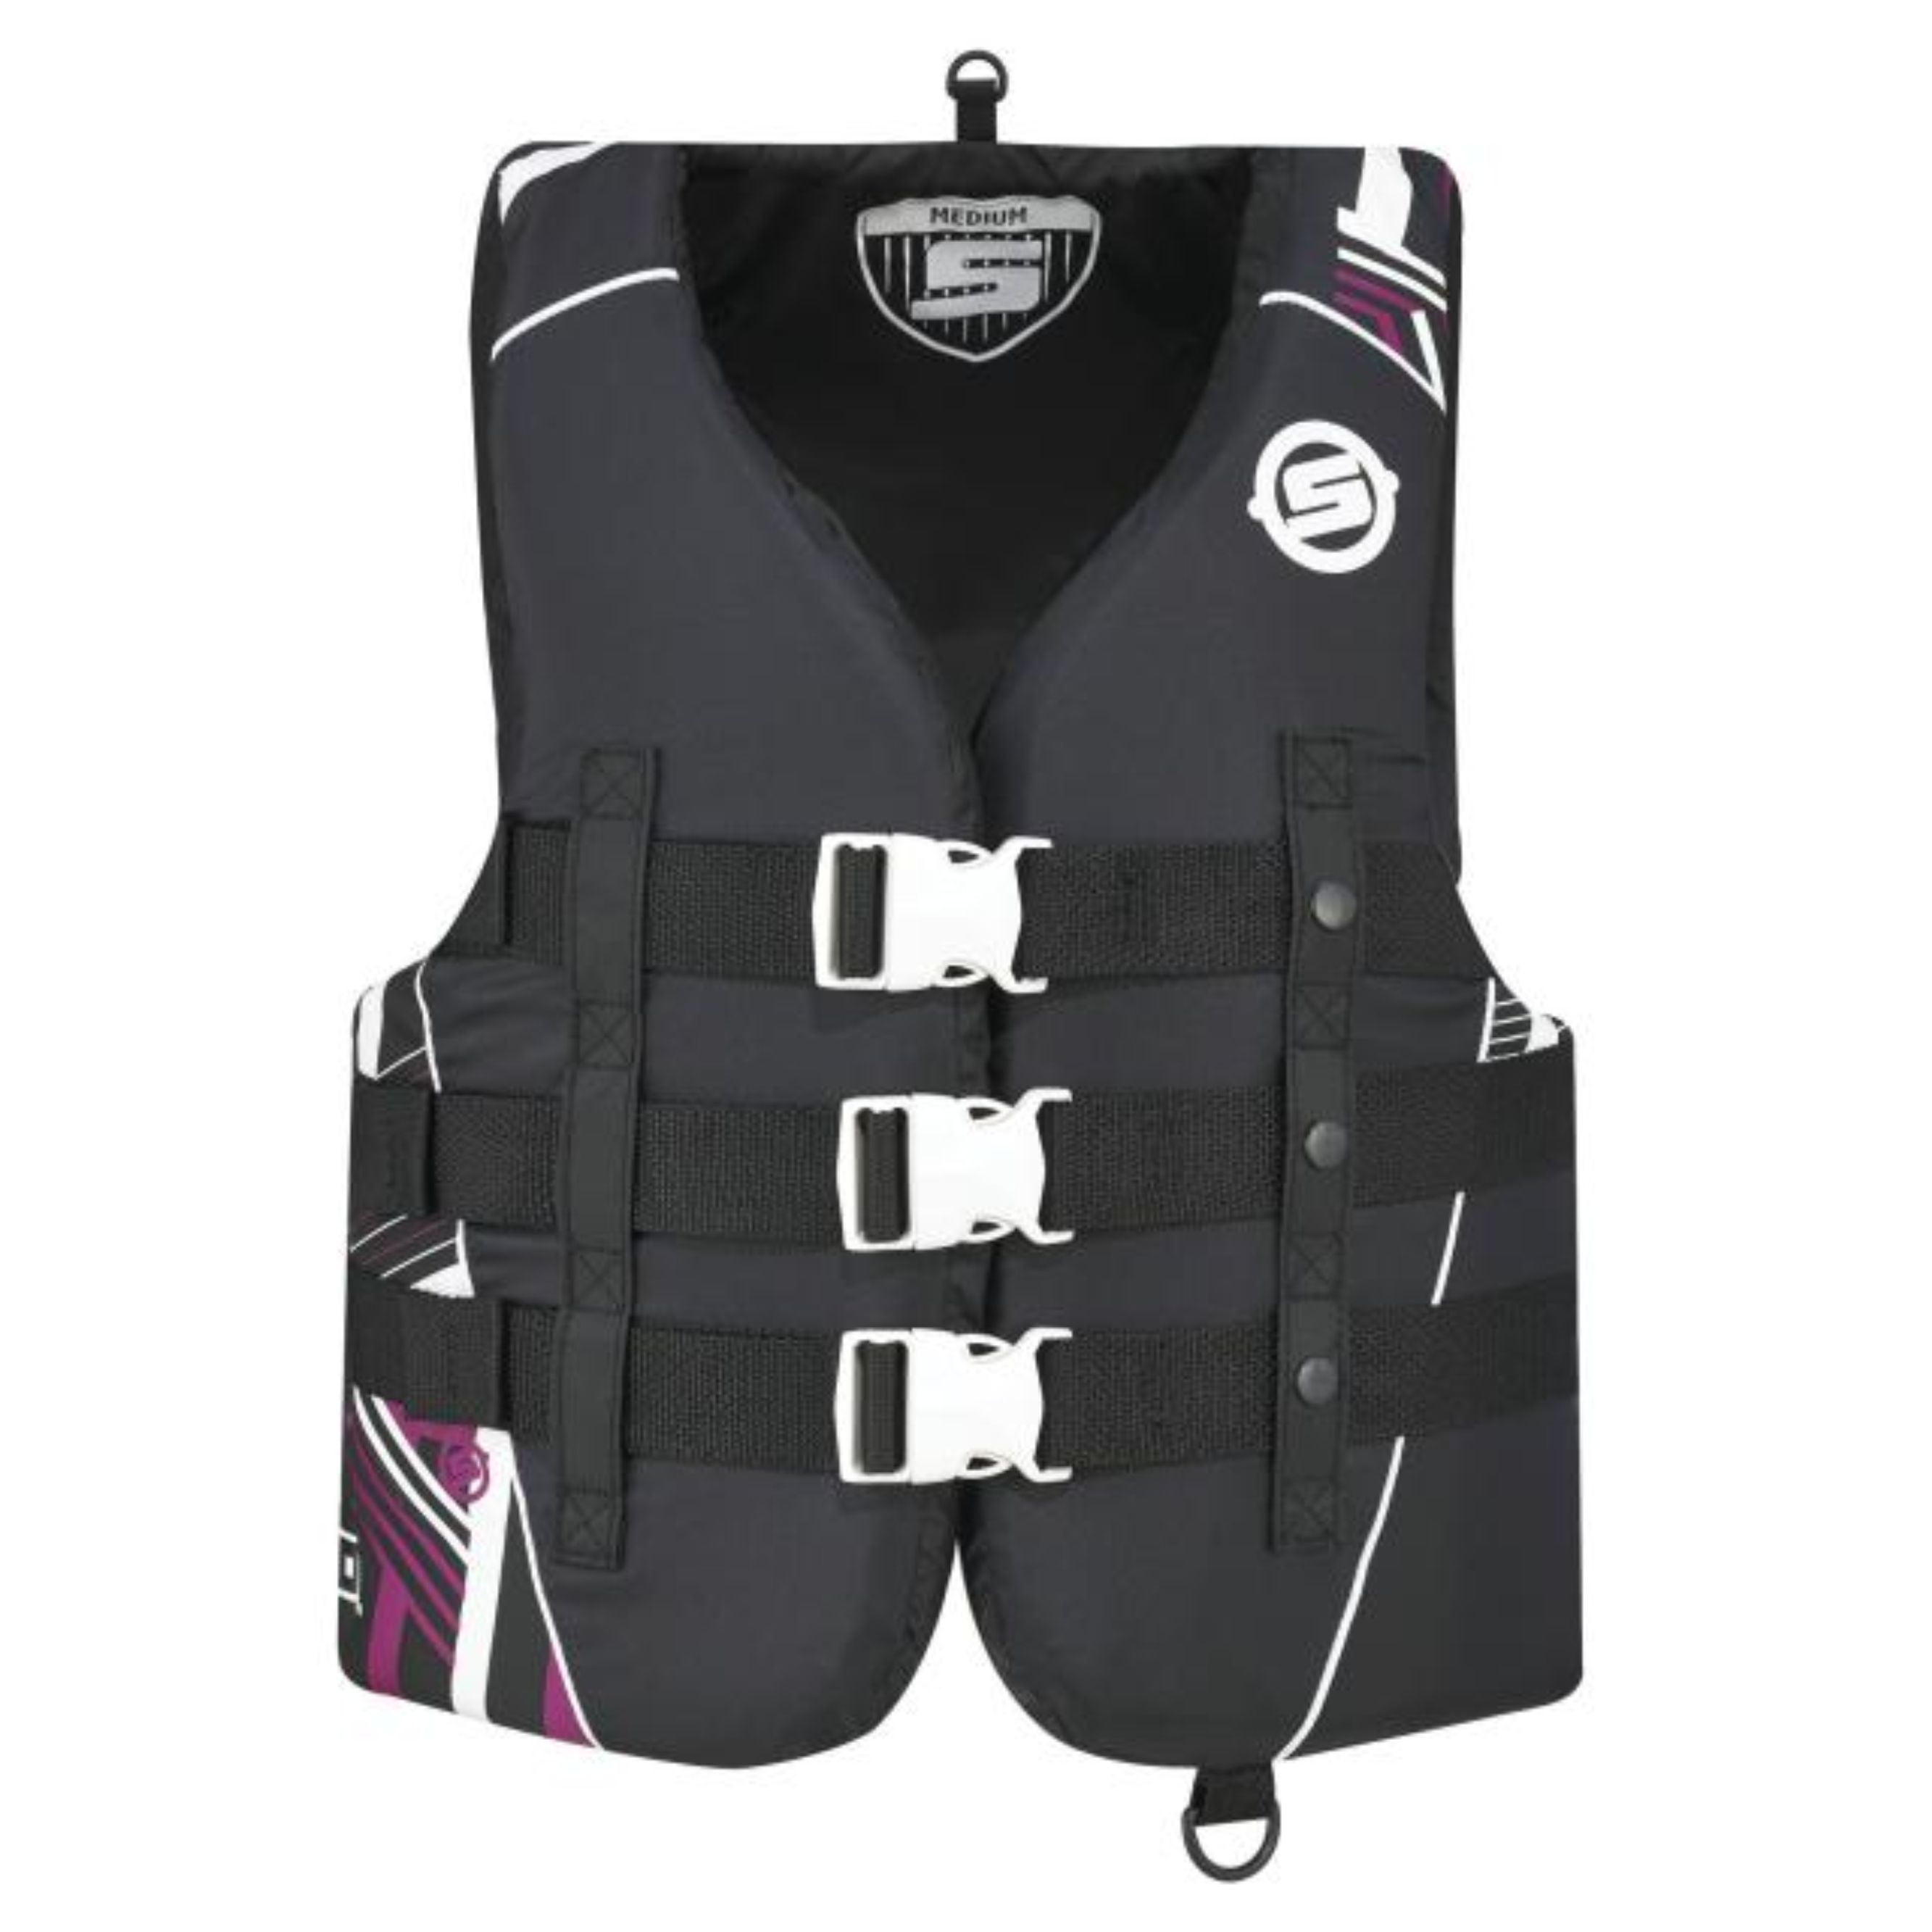 a. NEW w/tags BRP SEA-DOO Ladies' life vest jacket women's size L large 